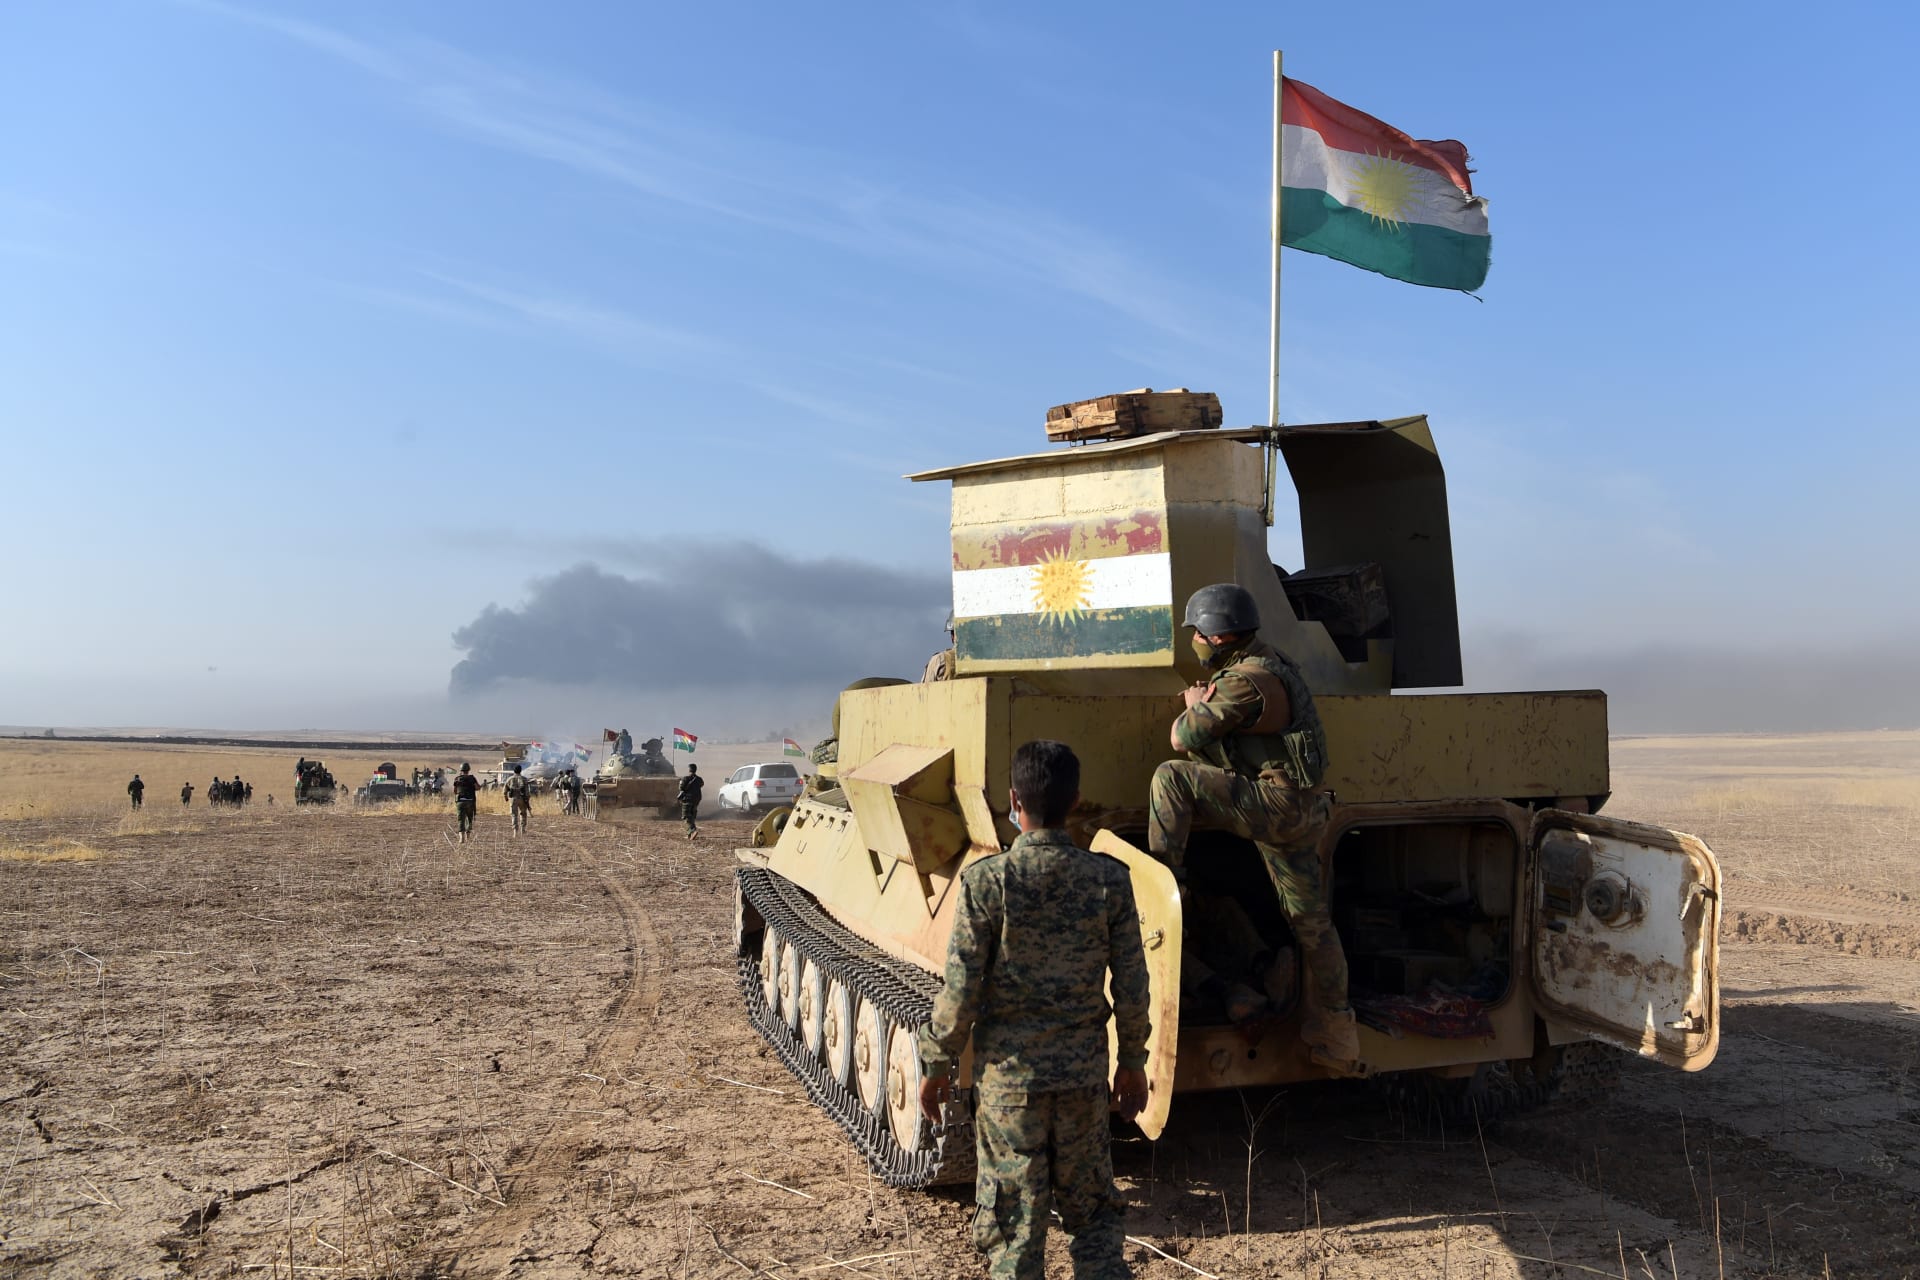 تقارير عراقية: قوات البيشمركة تنسحب من مناطق واسعة شمال العراق